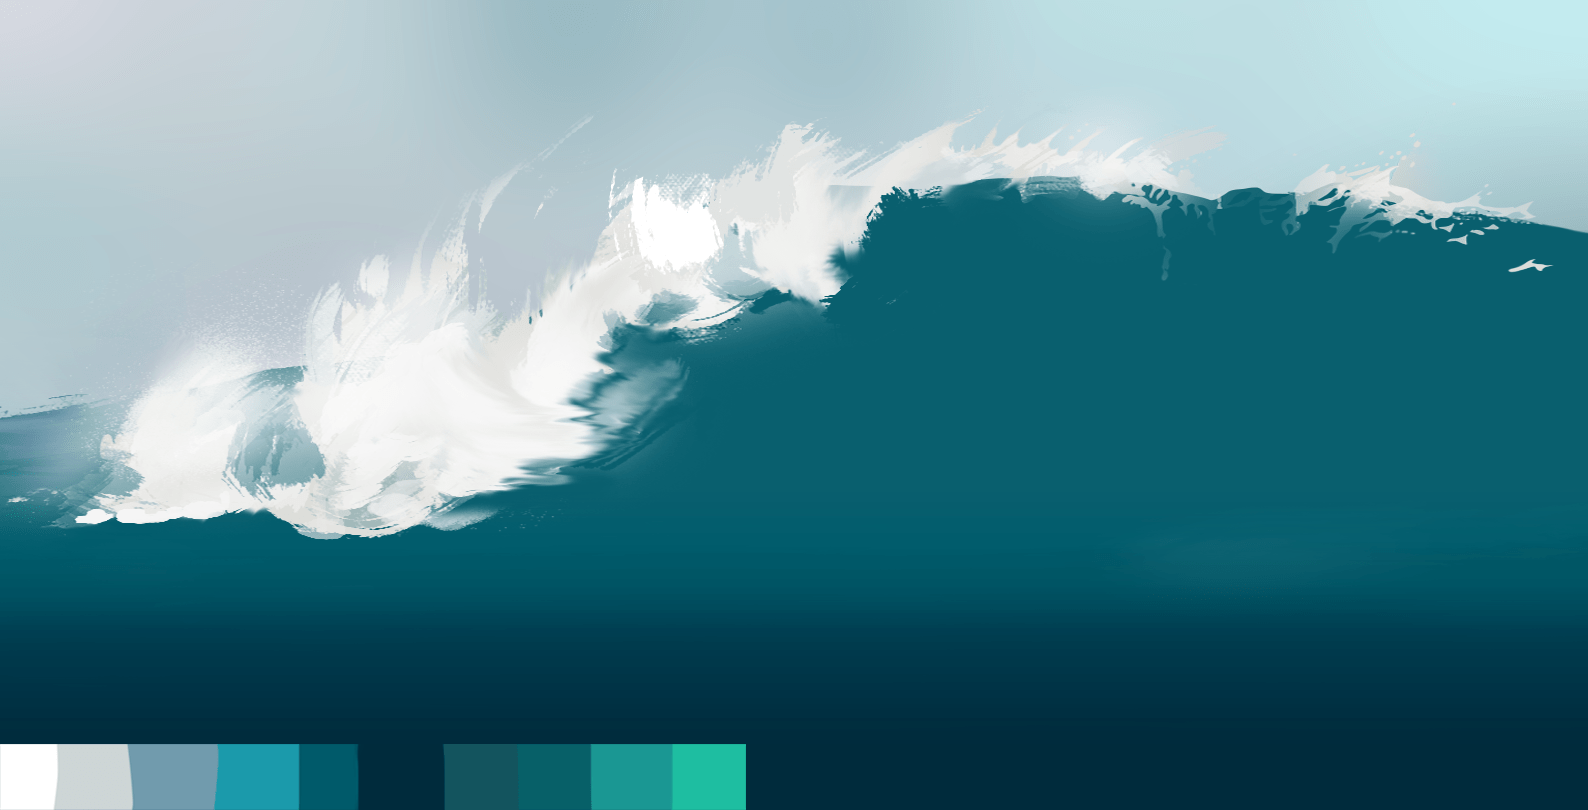 couleur de l’eau et de l’écume de la vague